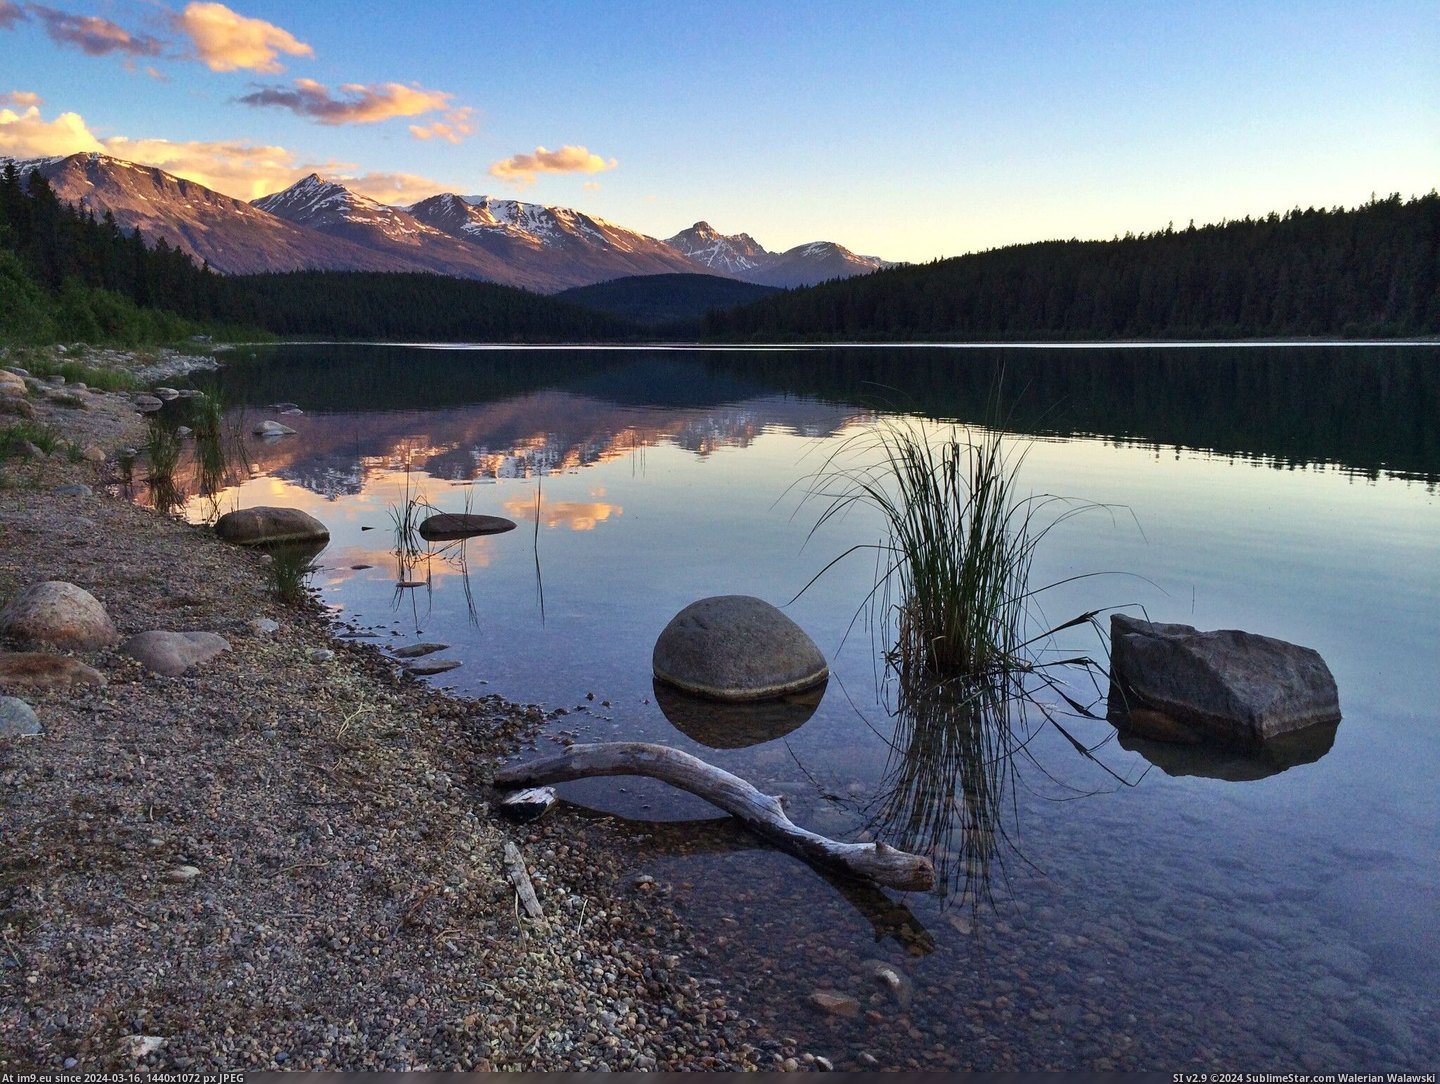 #Lake #Sunset #2048x1536 #Jasper #Patricia #Canada #Alberta [Earthporn] Sunset at Patricia Lake near Jasper, ALberta, Canada. [2048x1536] Pic. (Bild von album My r/EARTHPORN favs))